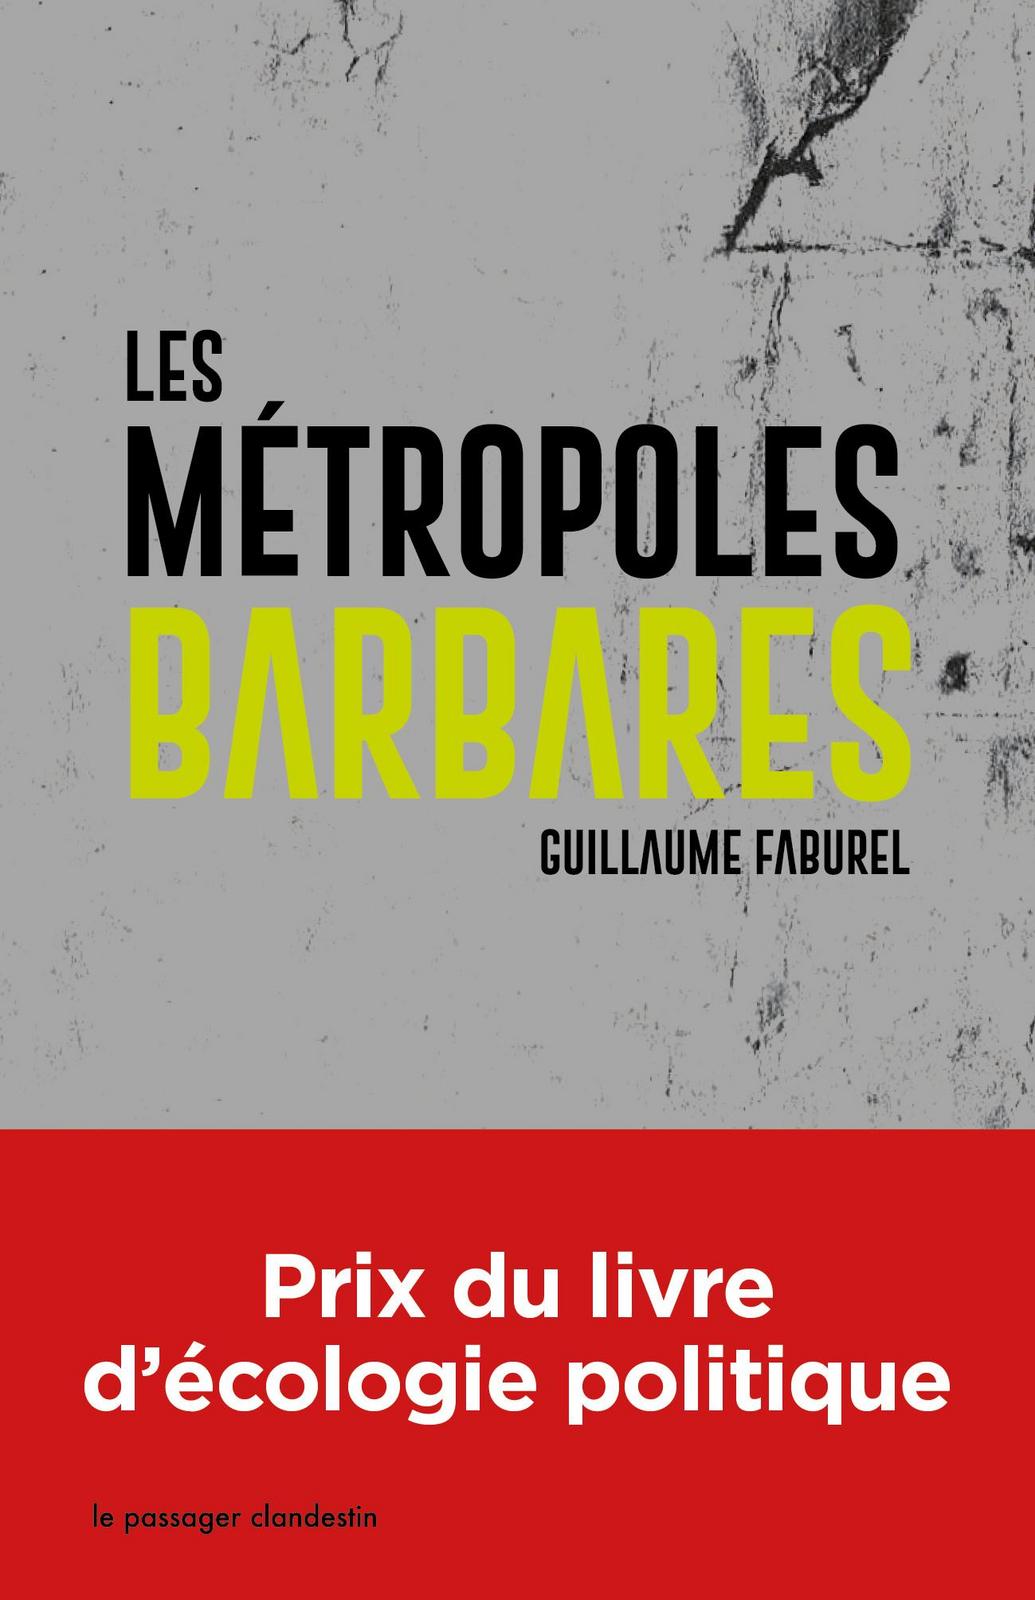 Guillaume Faburel: Les métropoles barbares (French language, 2019)